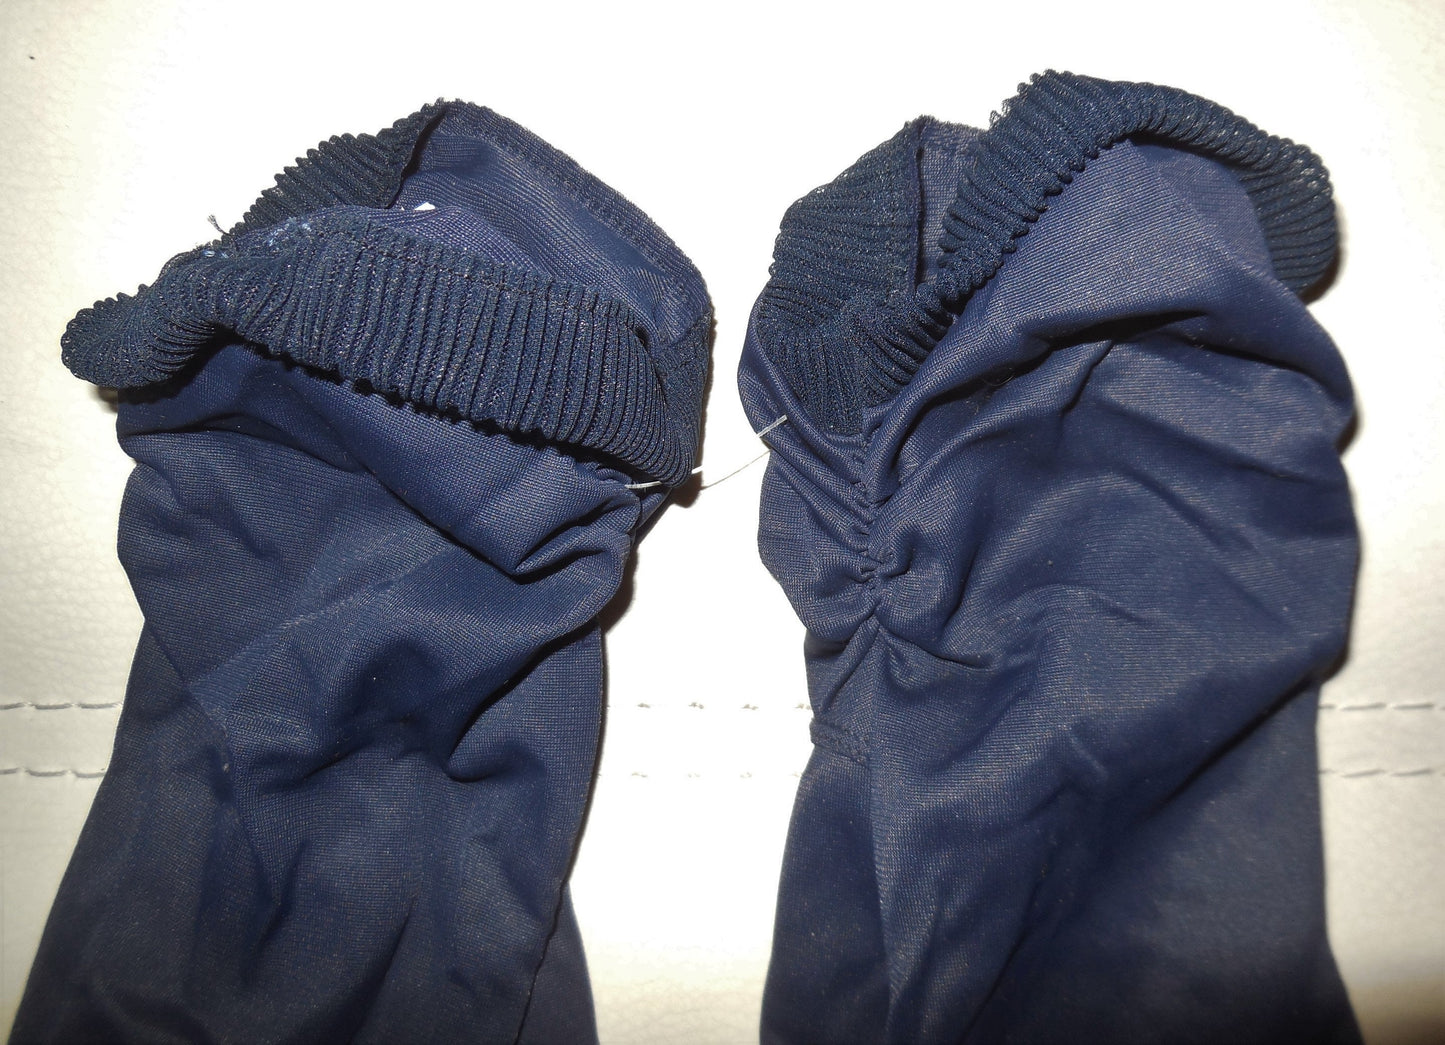 SALE Vintage Gloves 1950s Dark Navy Blue Nylon Plissee Gloves Midlength Hansen Rockabilly Pinup 7 1/2